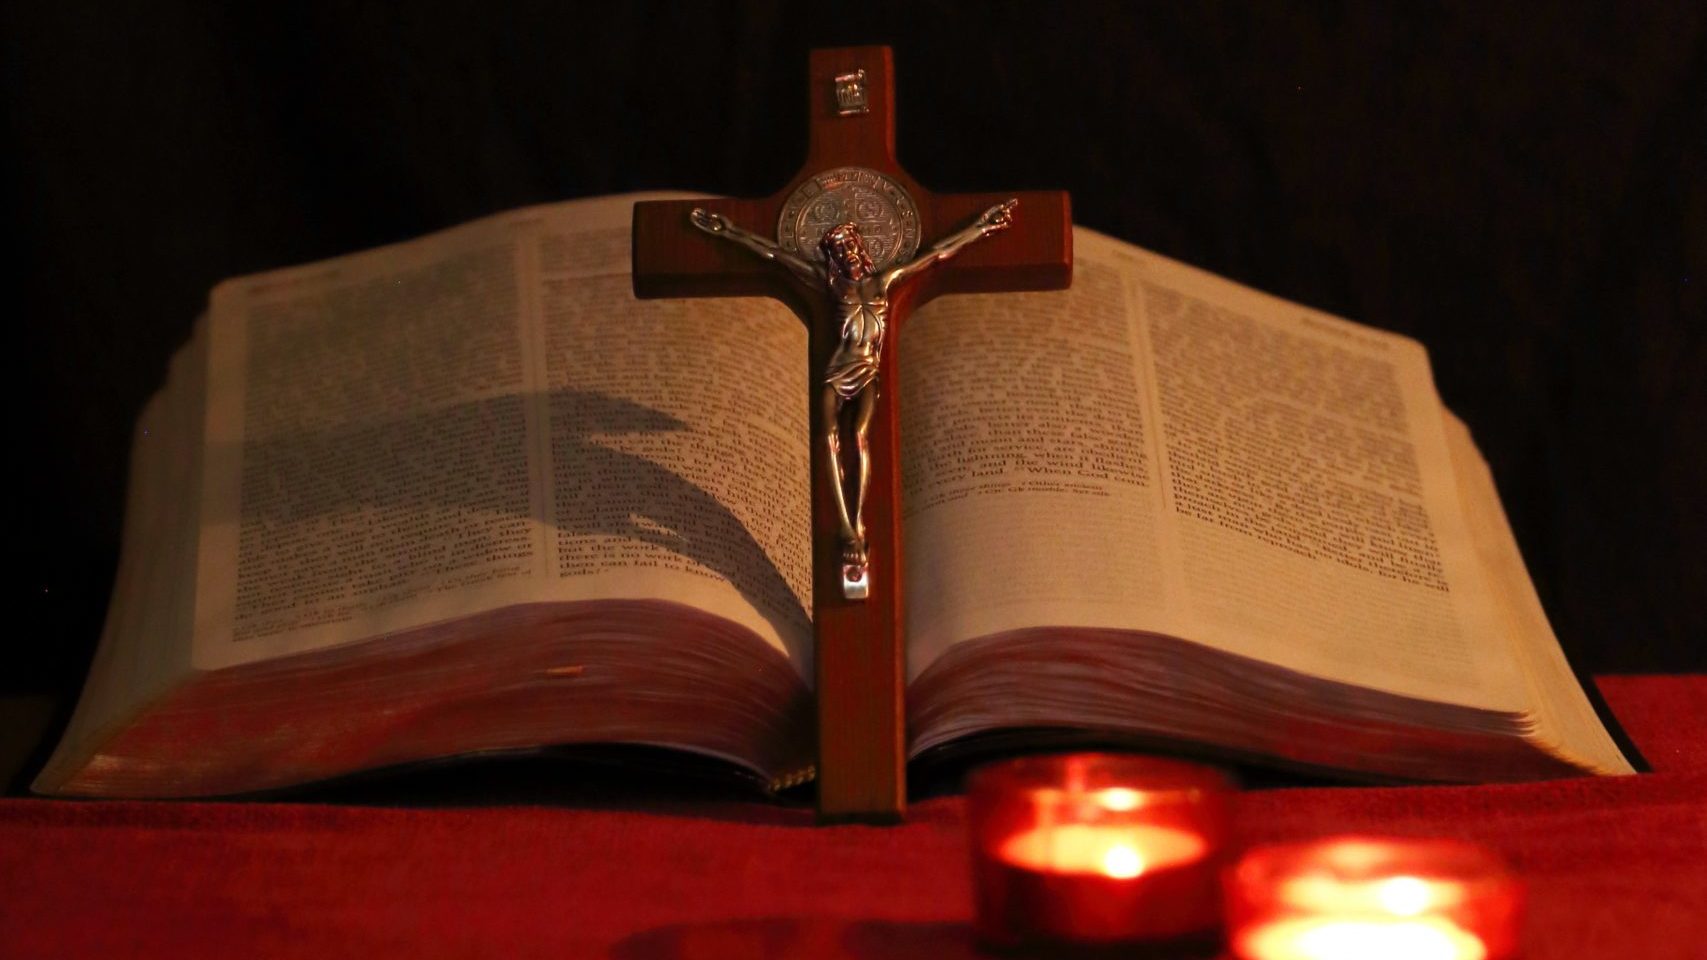 processo catequético - vela, bíblia e cruz